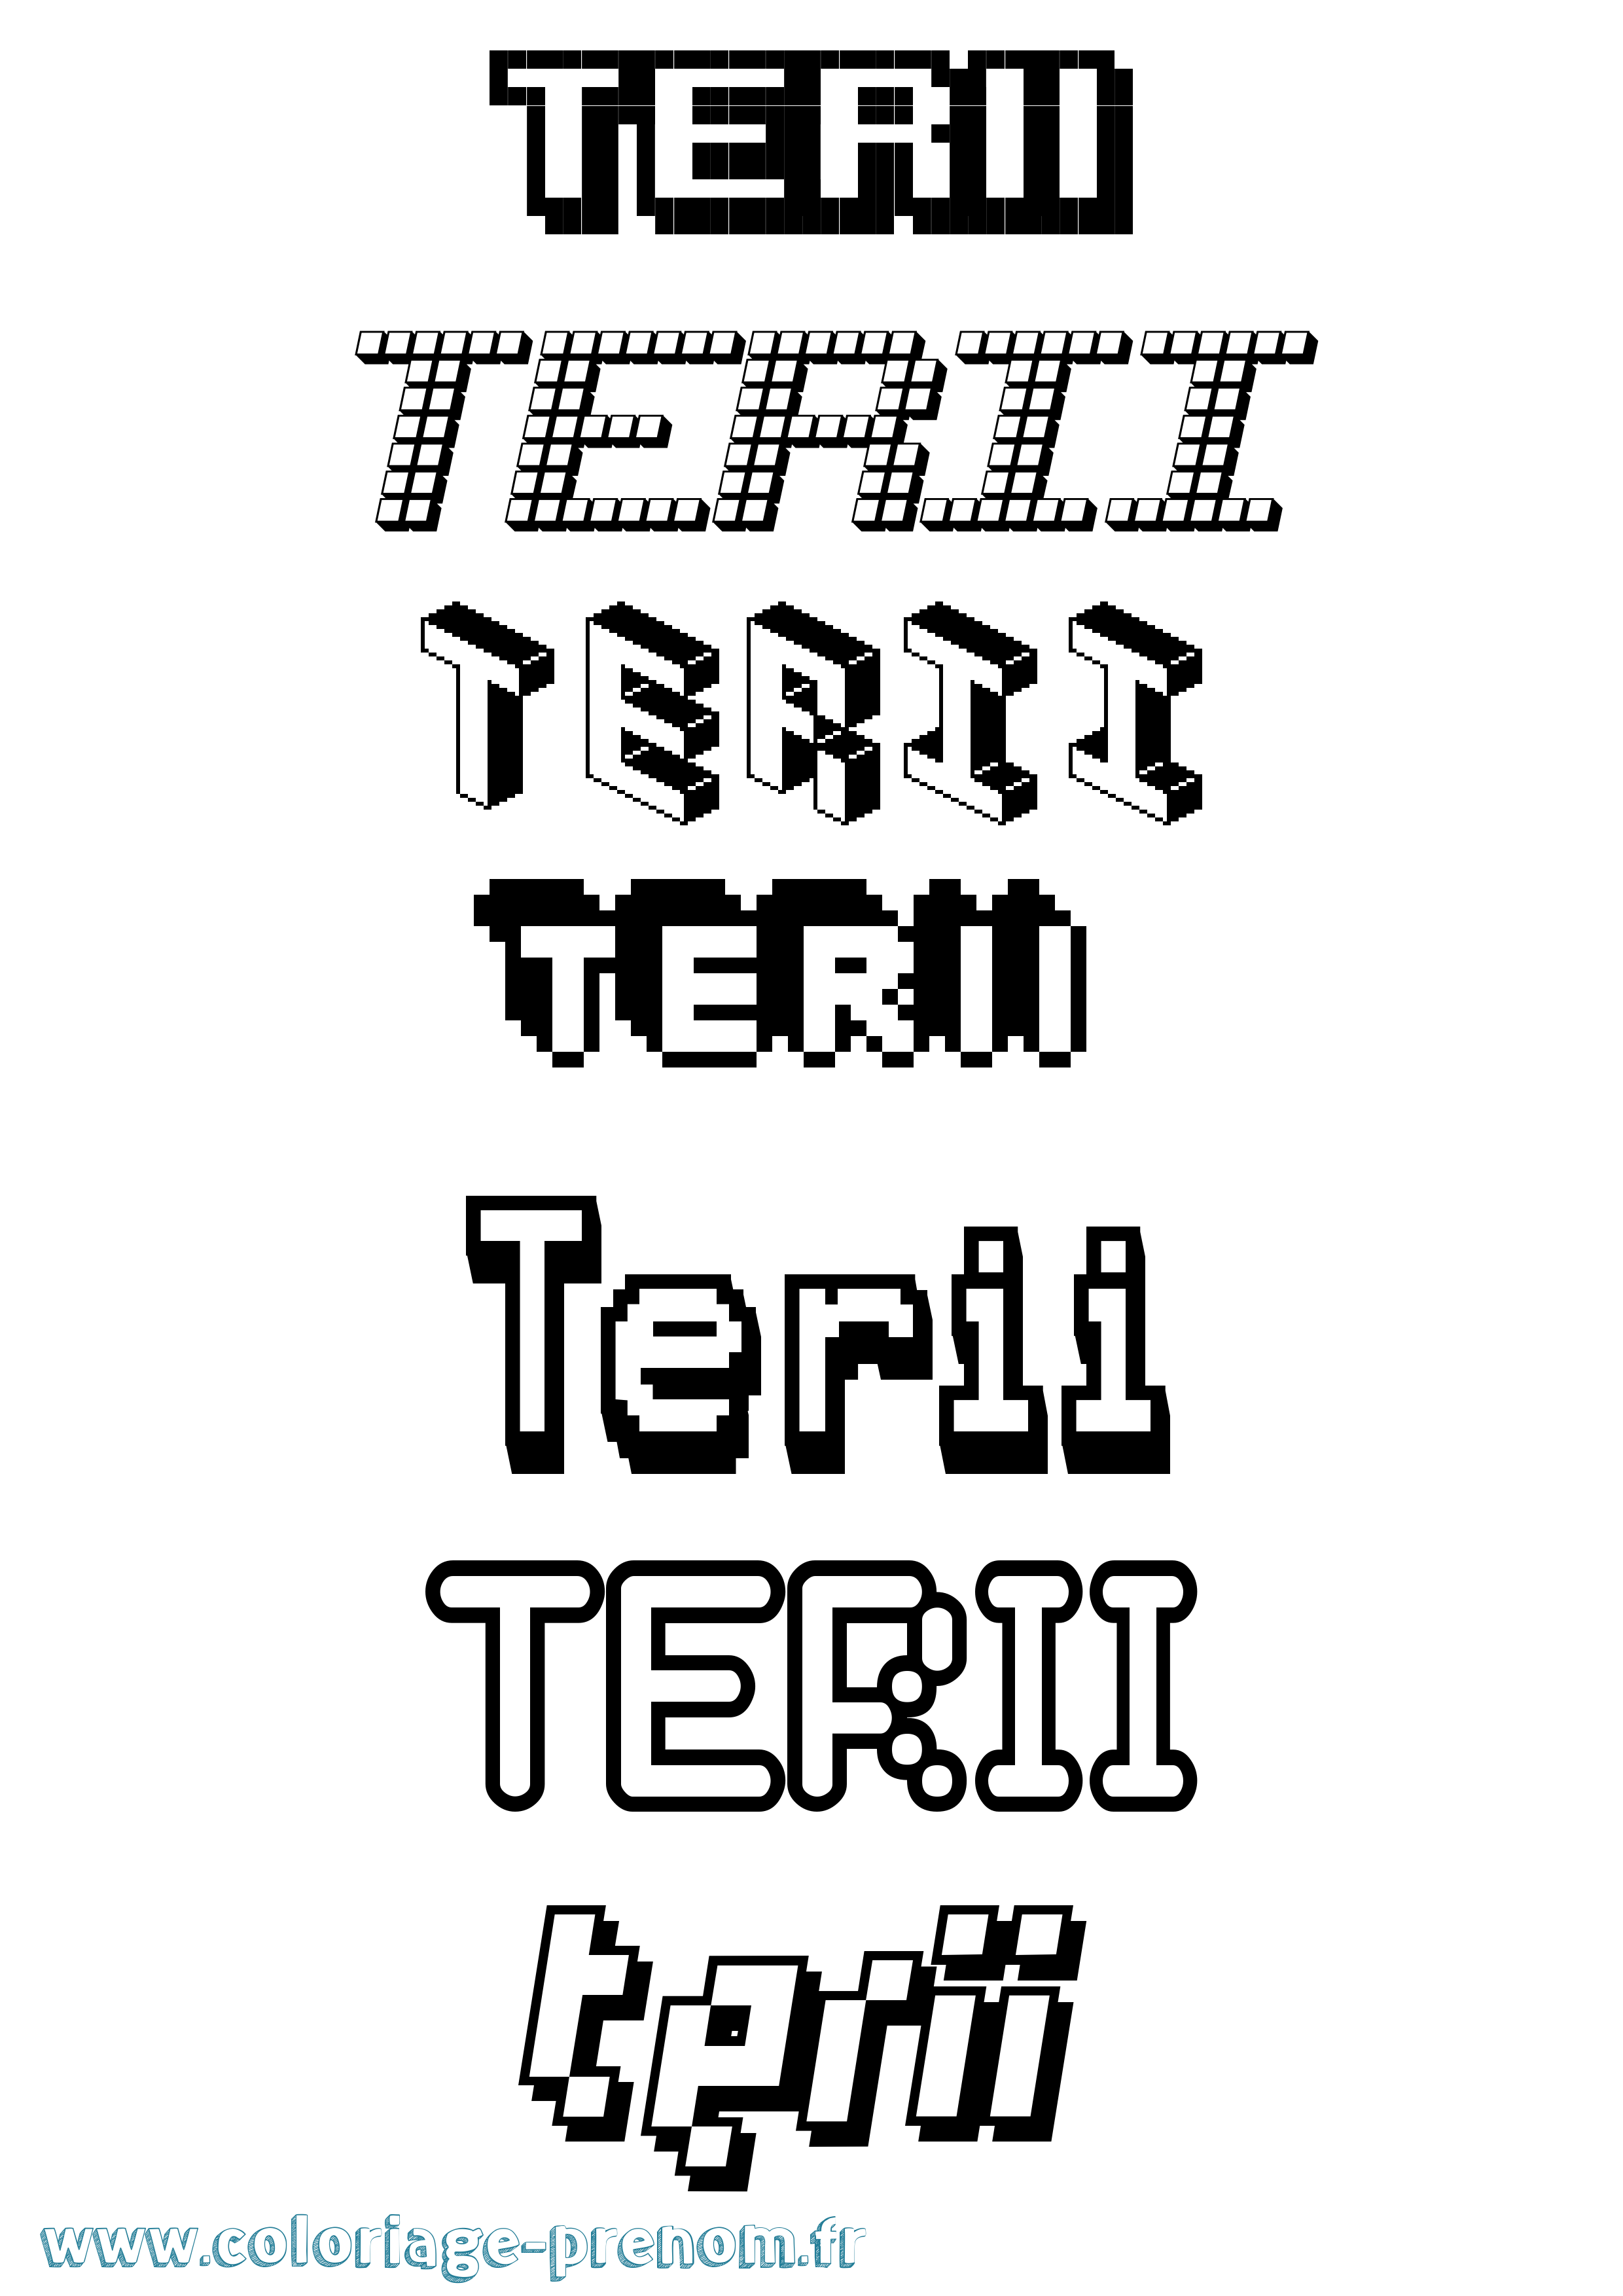 Coloriage prénom Terii Pixel